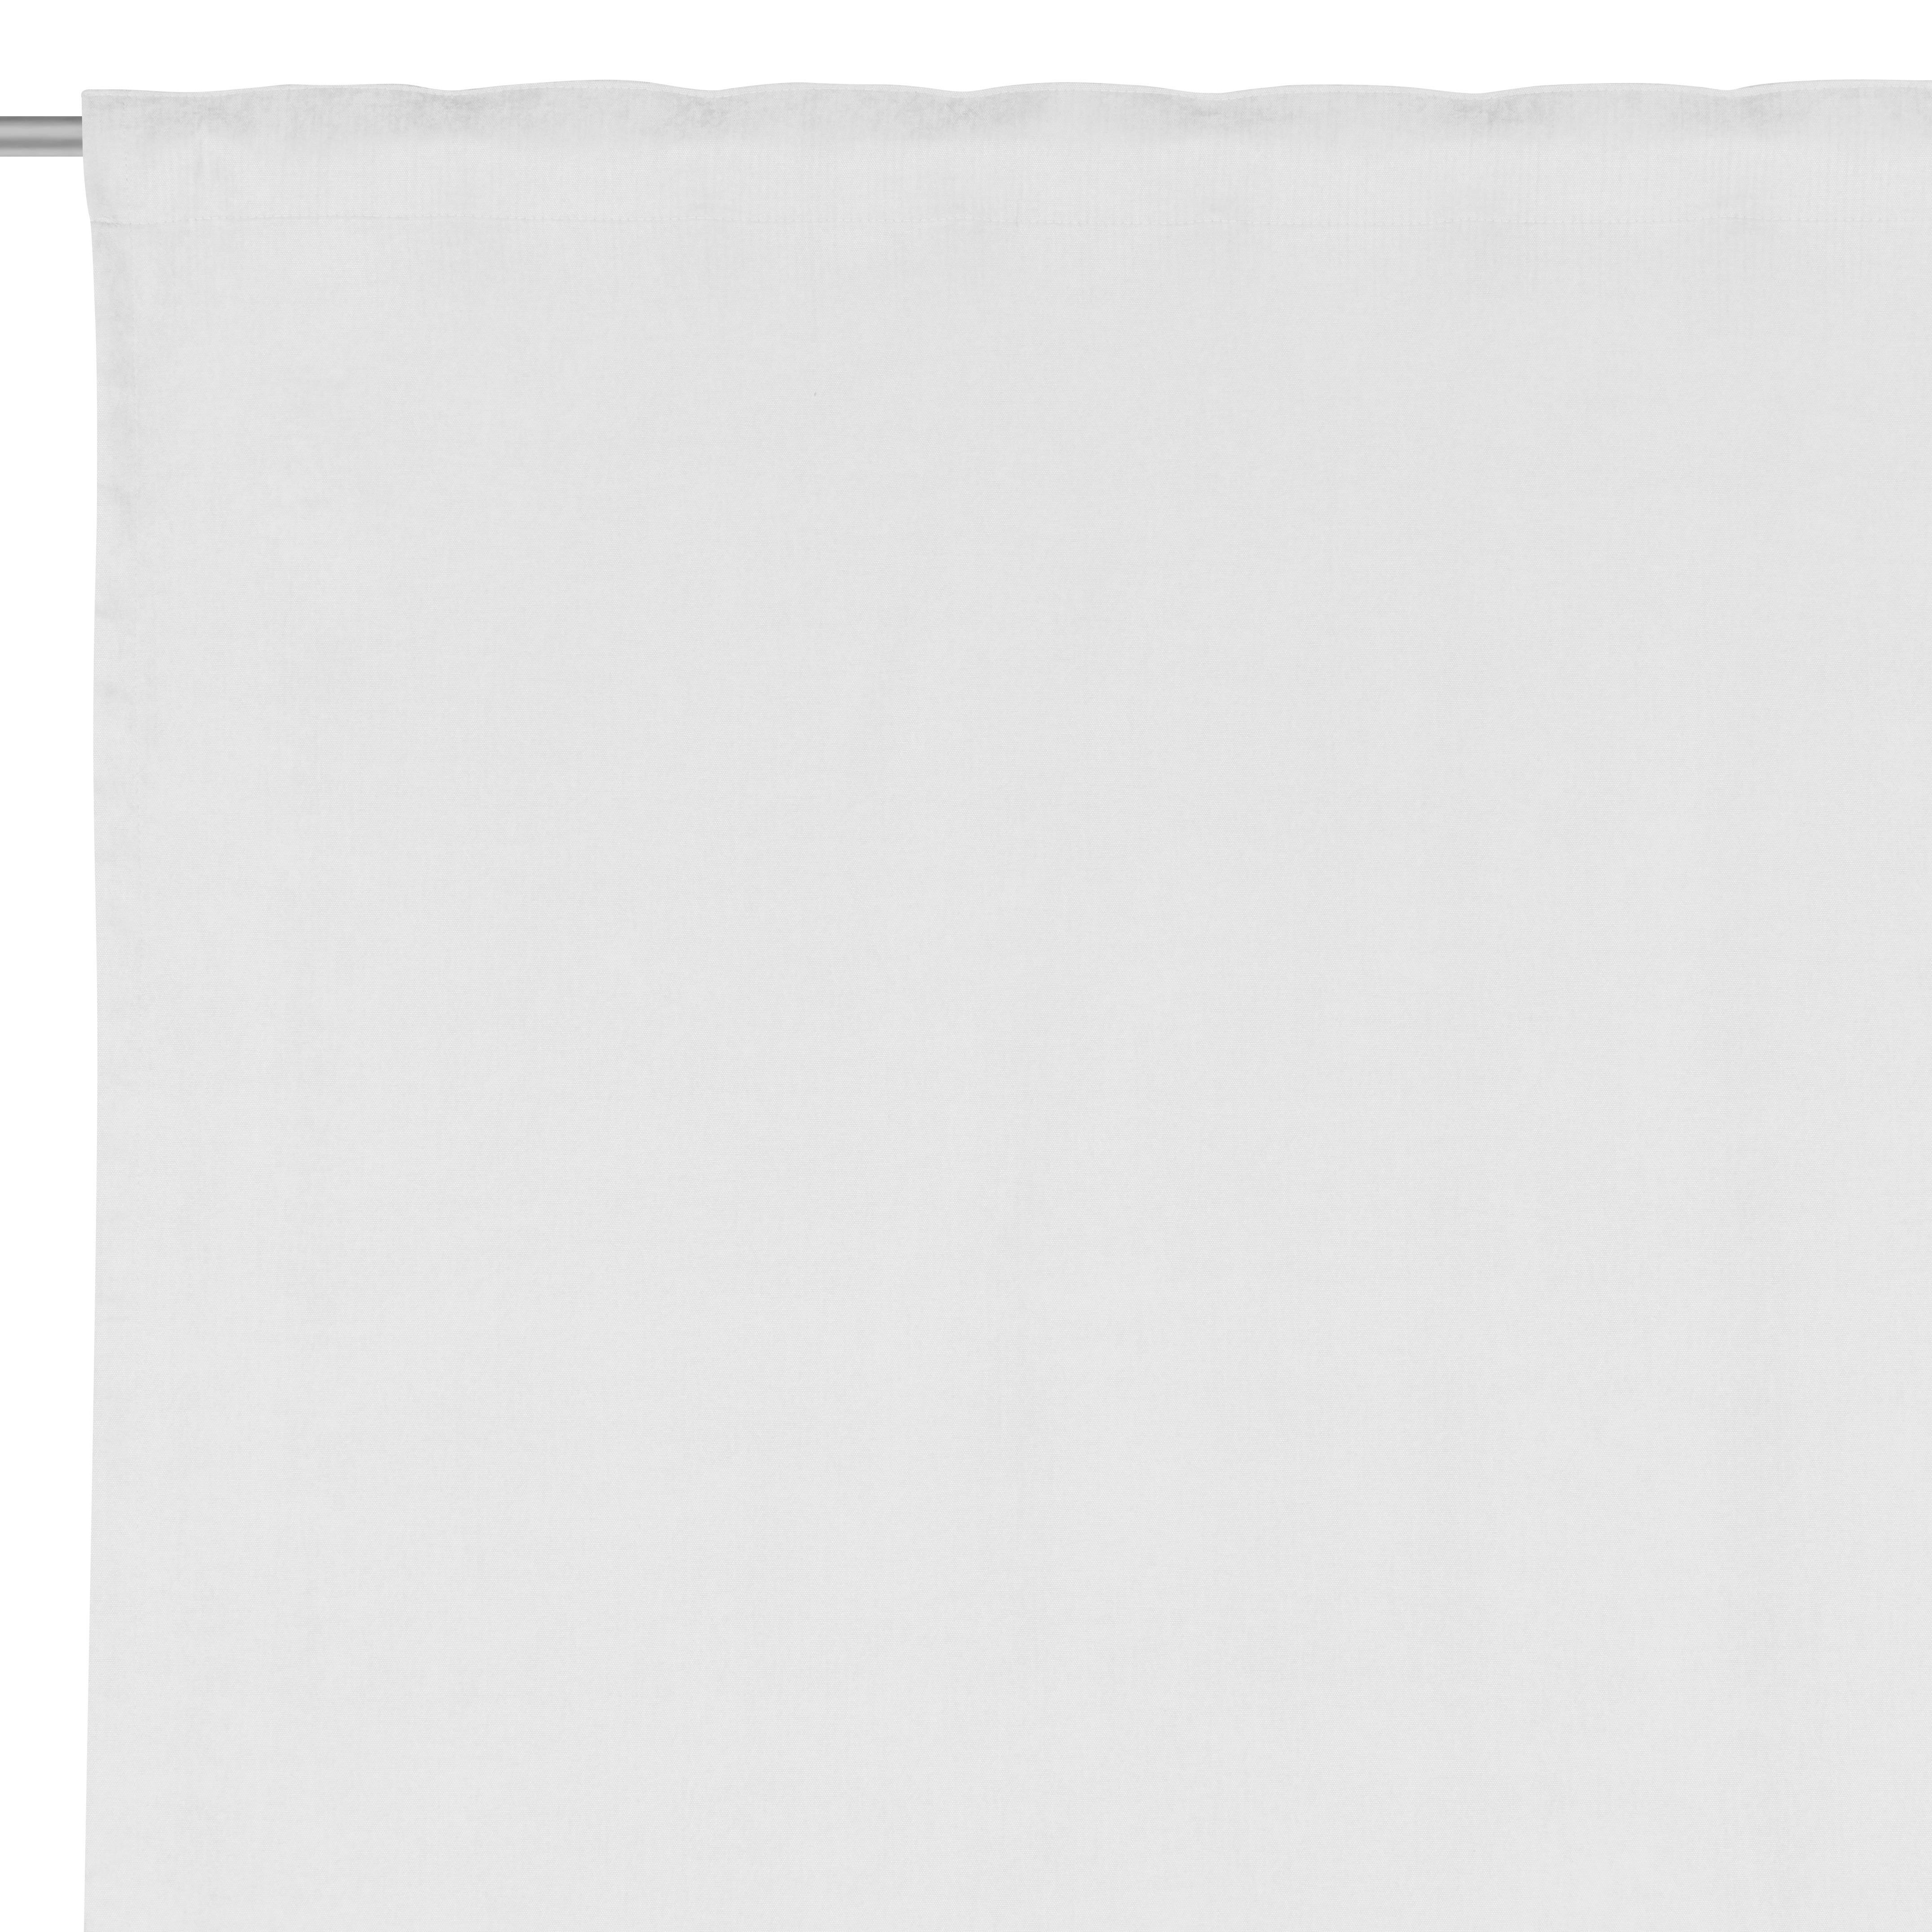 FERTIGVORHANG Harmony blickdicht 140/245 cm   - Weiß, Basics, Textil (140/245cm) - Esposa